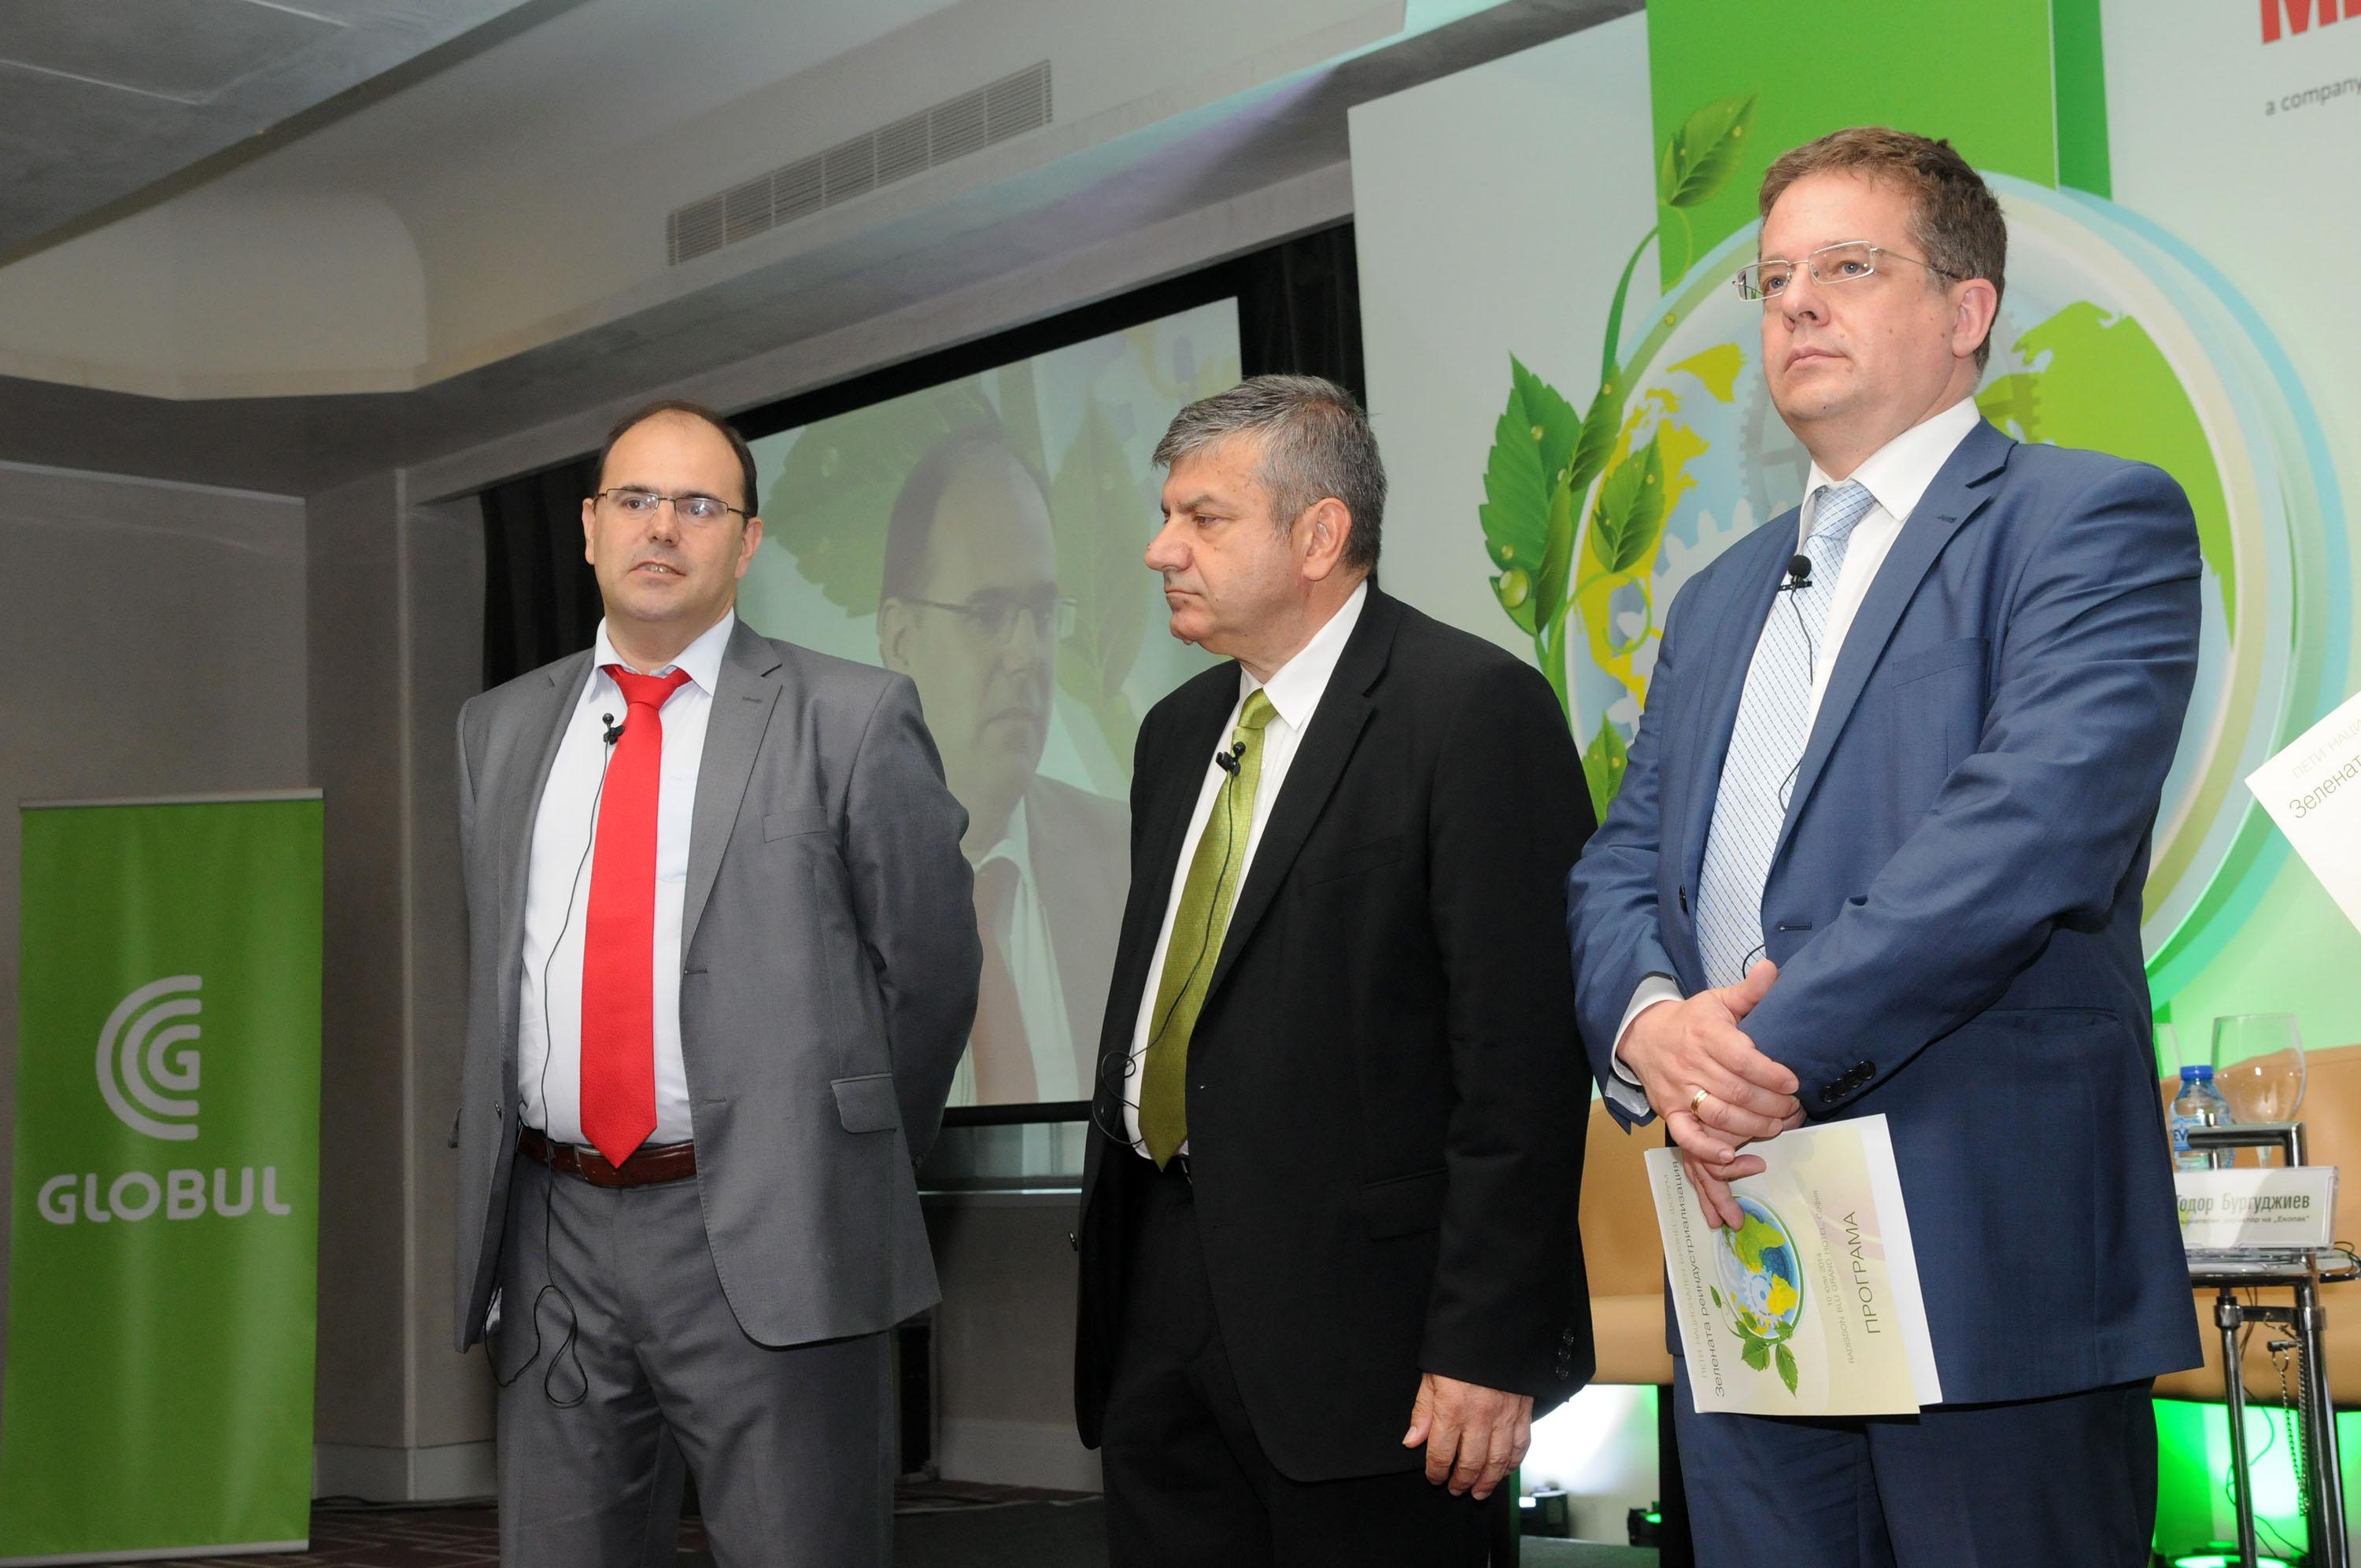 Globul и списание "Мениджър" организират Зелен бизнес форум